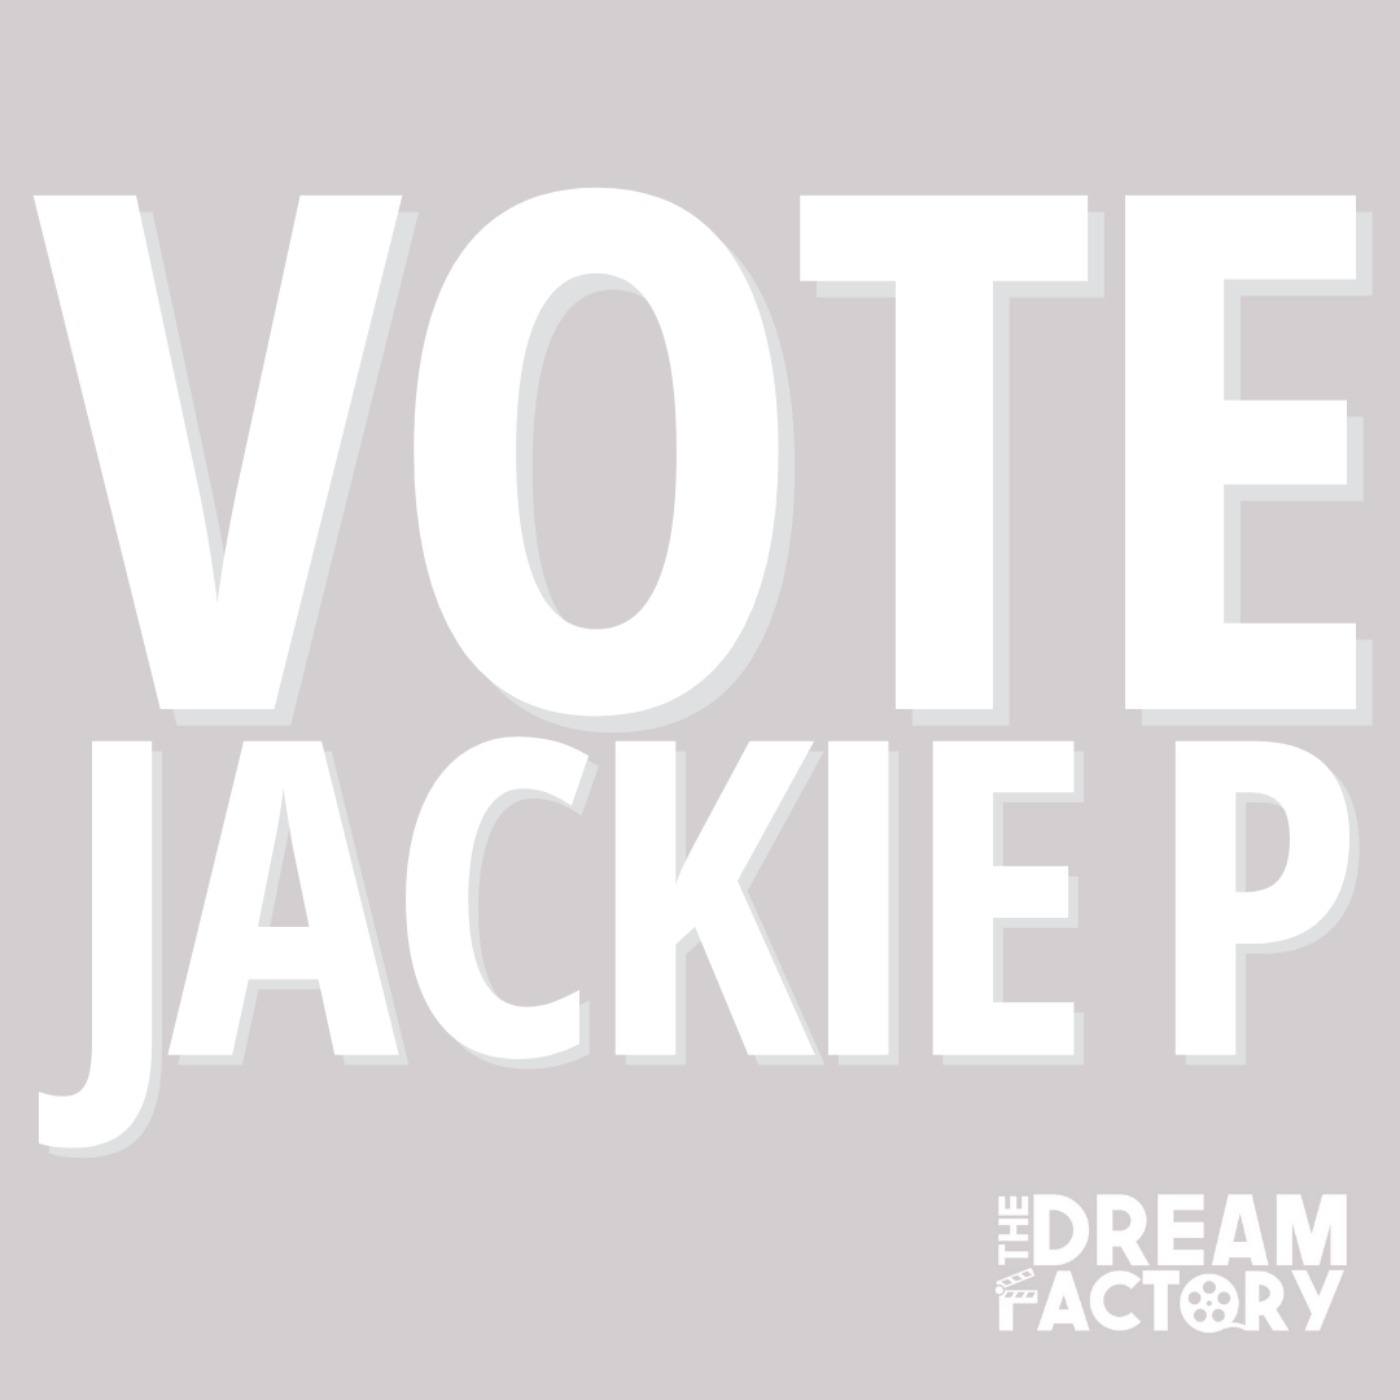 Vote Jackie P